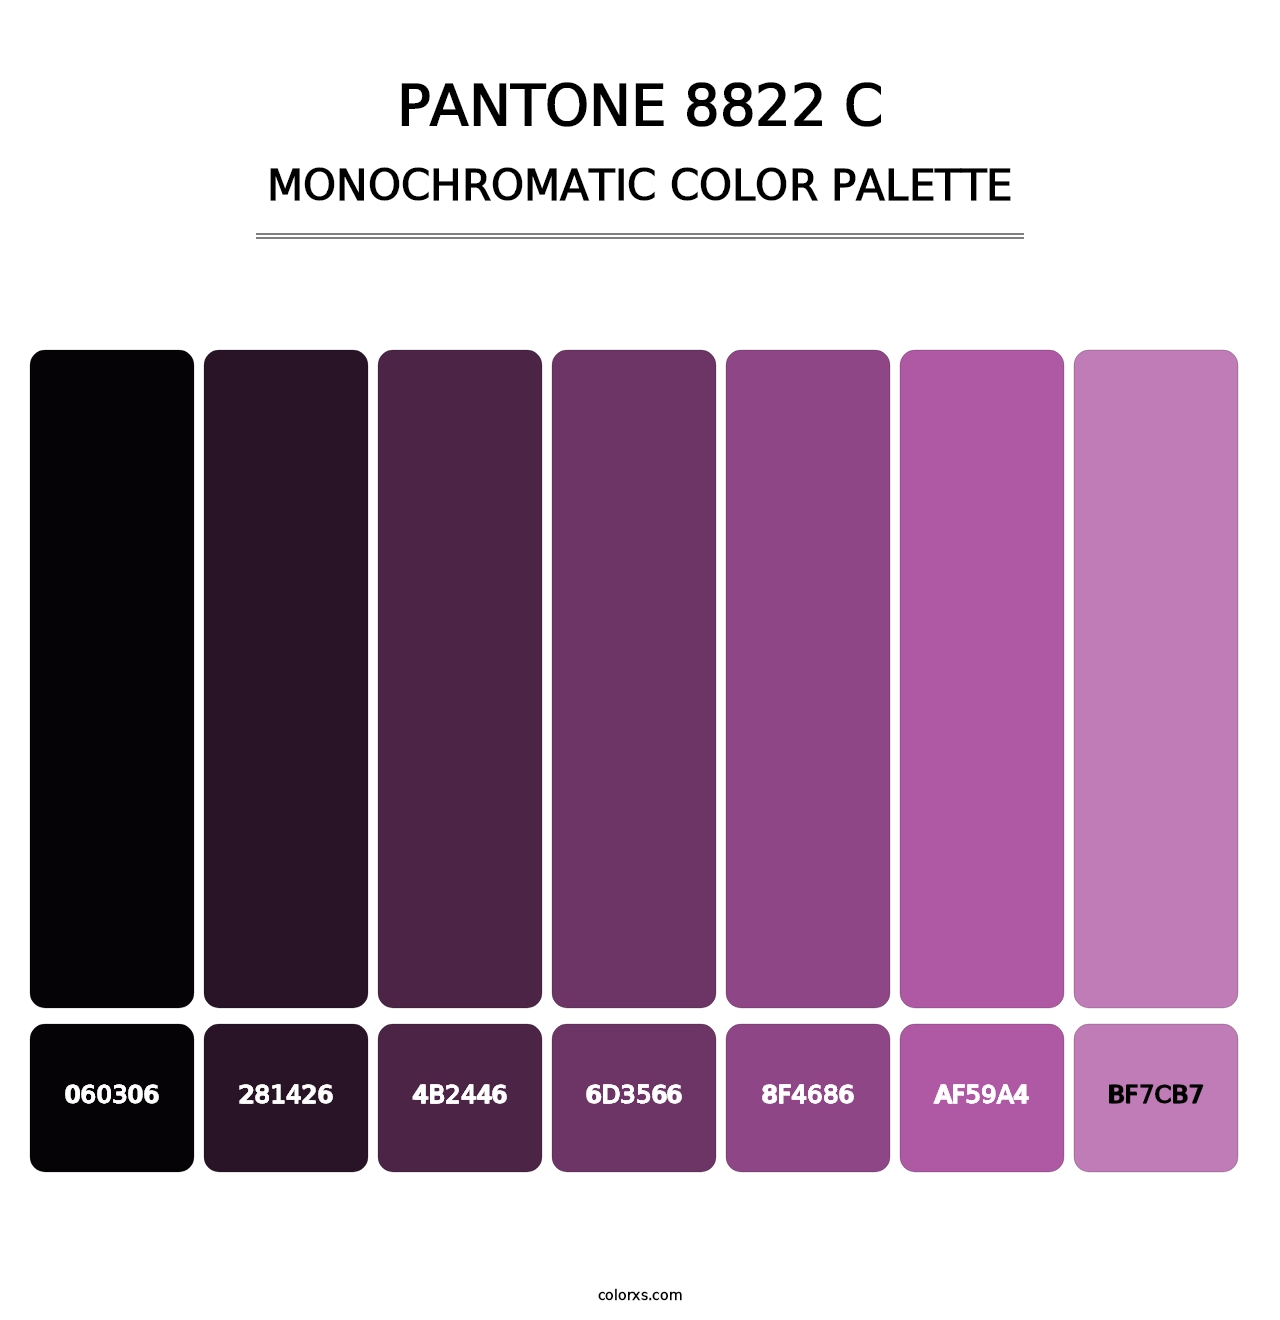 PANTONE 8822 C - Monochromatic Color Palette